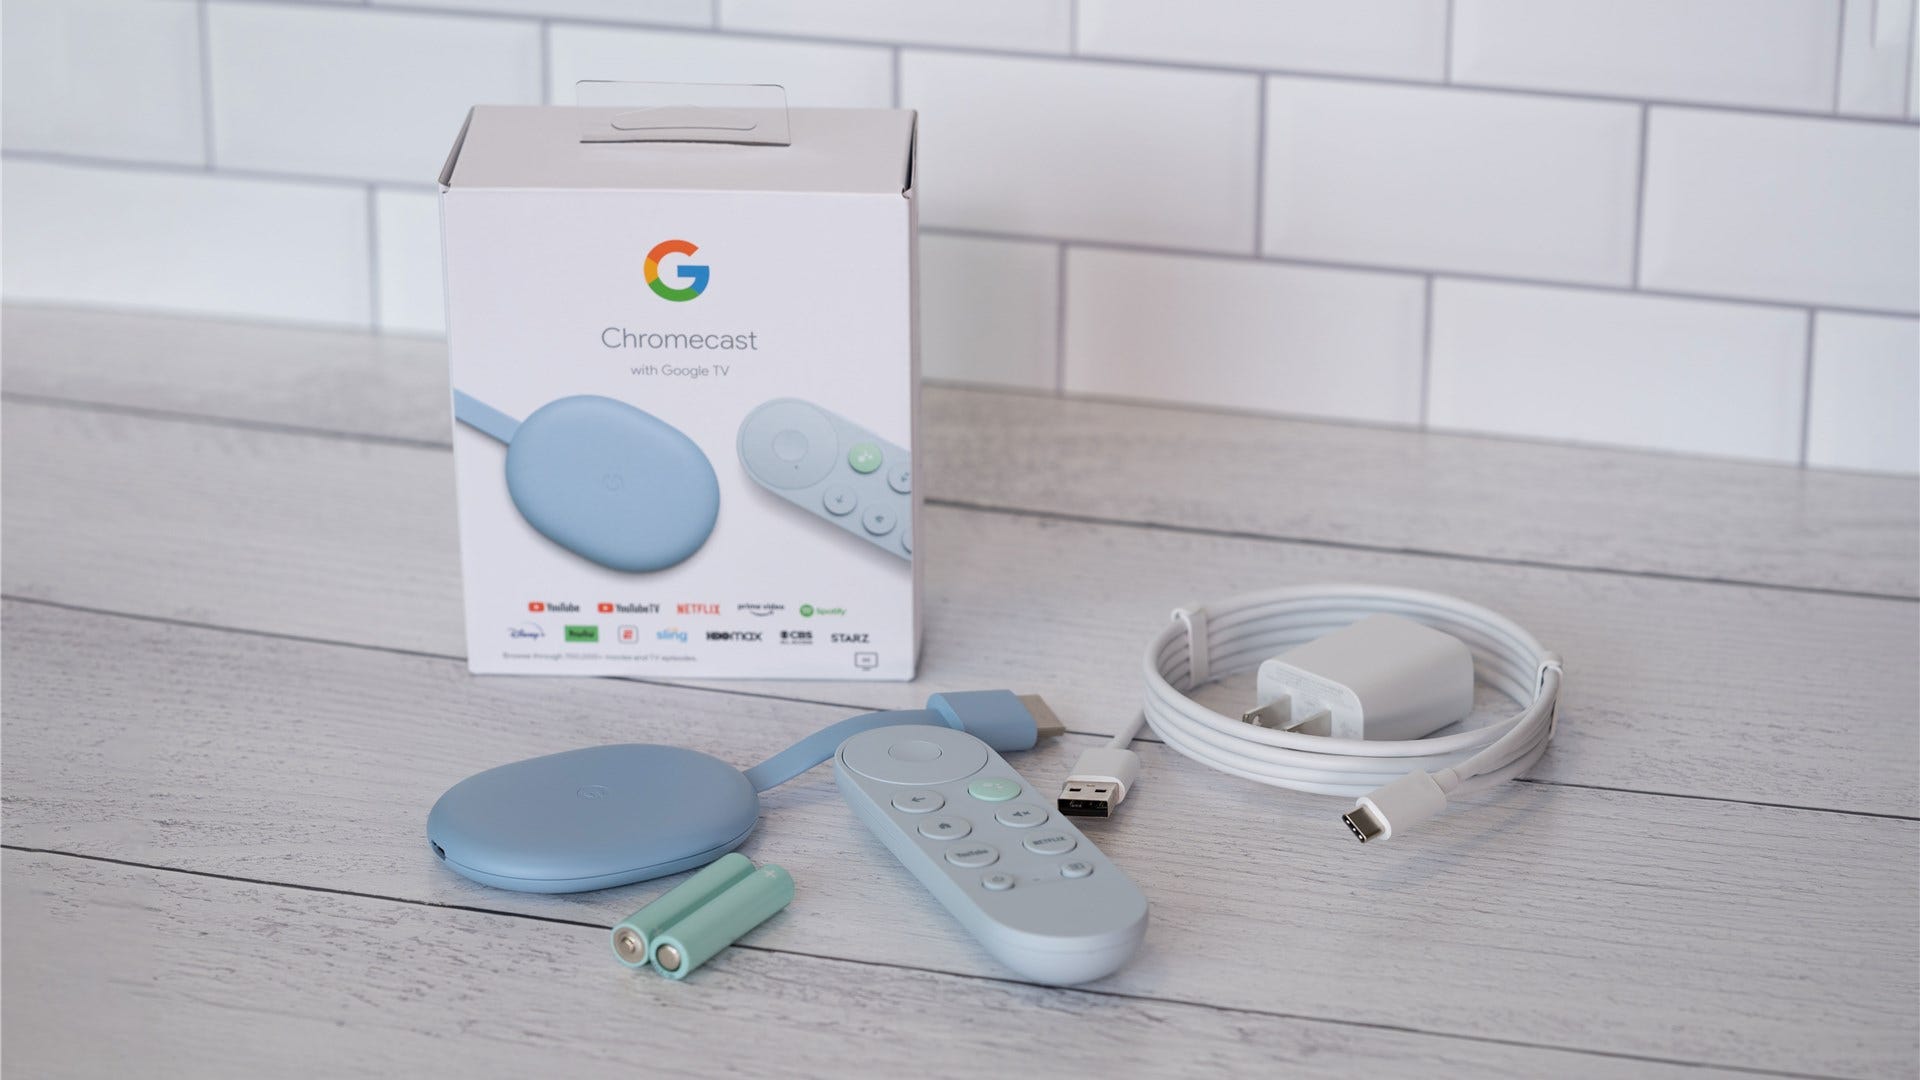 Uppackning av Chromecast med Google TV